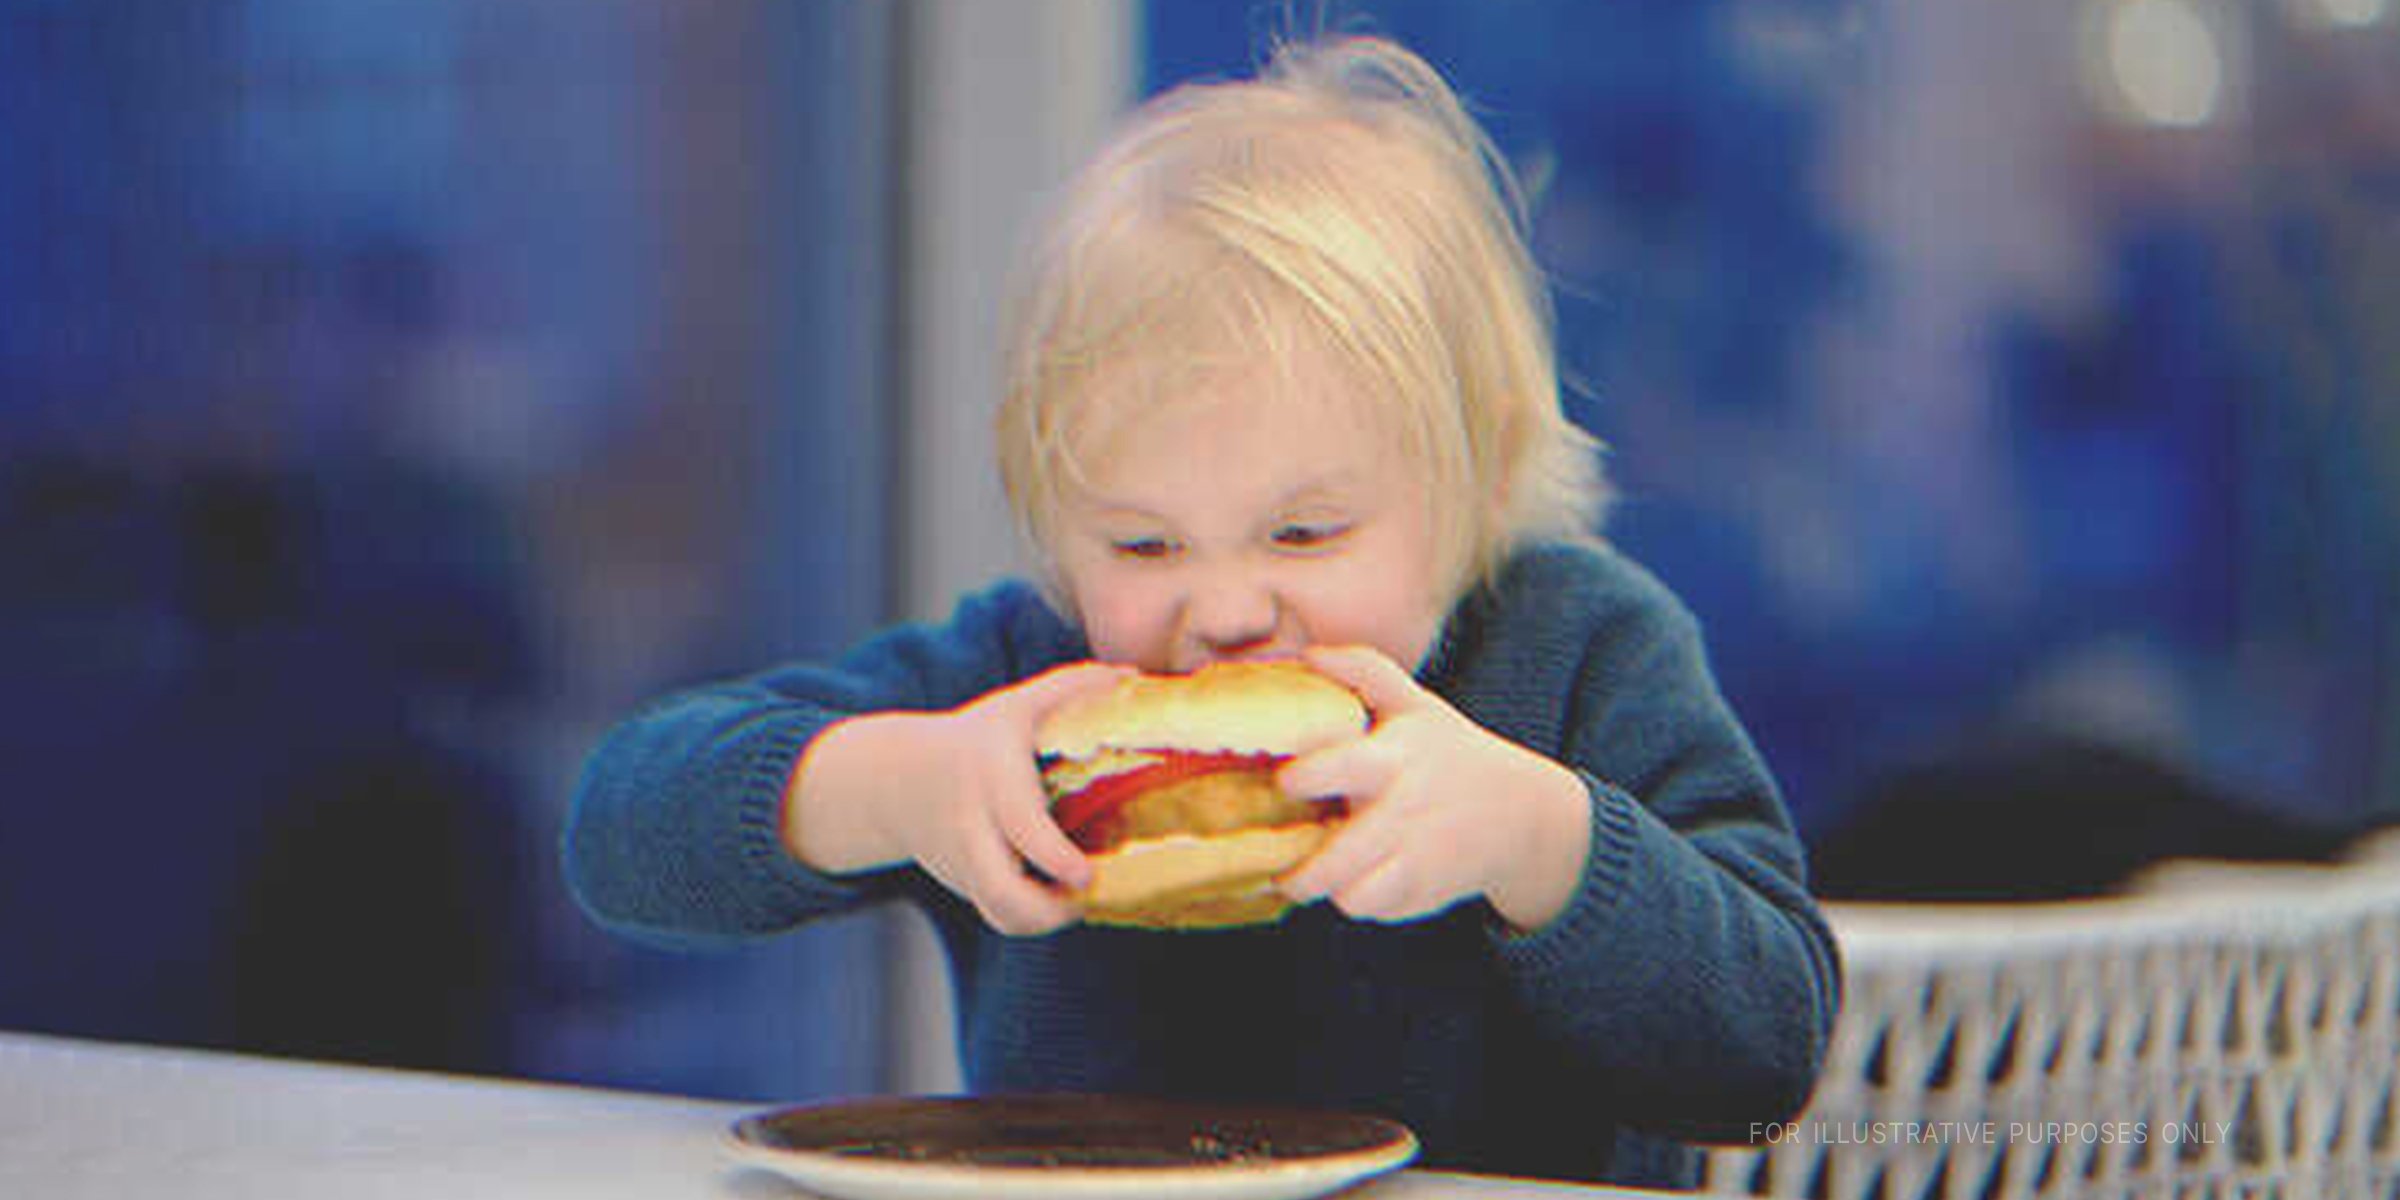 Little kid eating a burger. | Source: Shutterstock